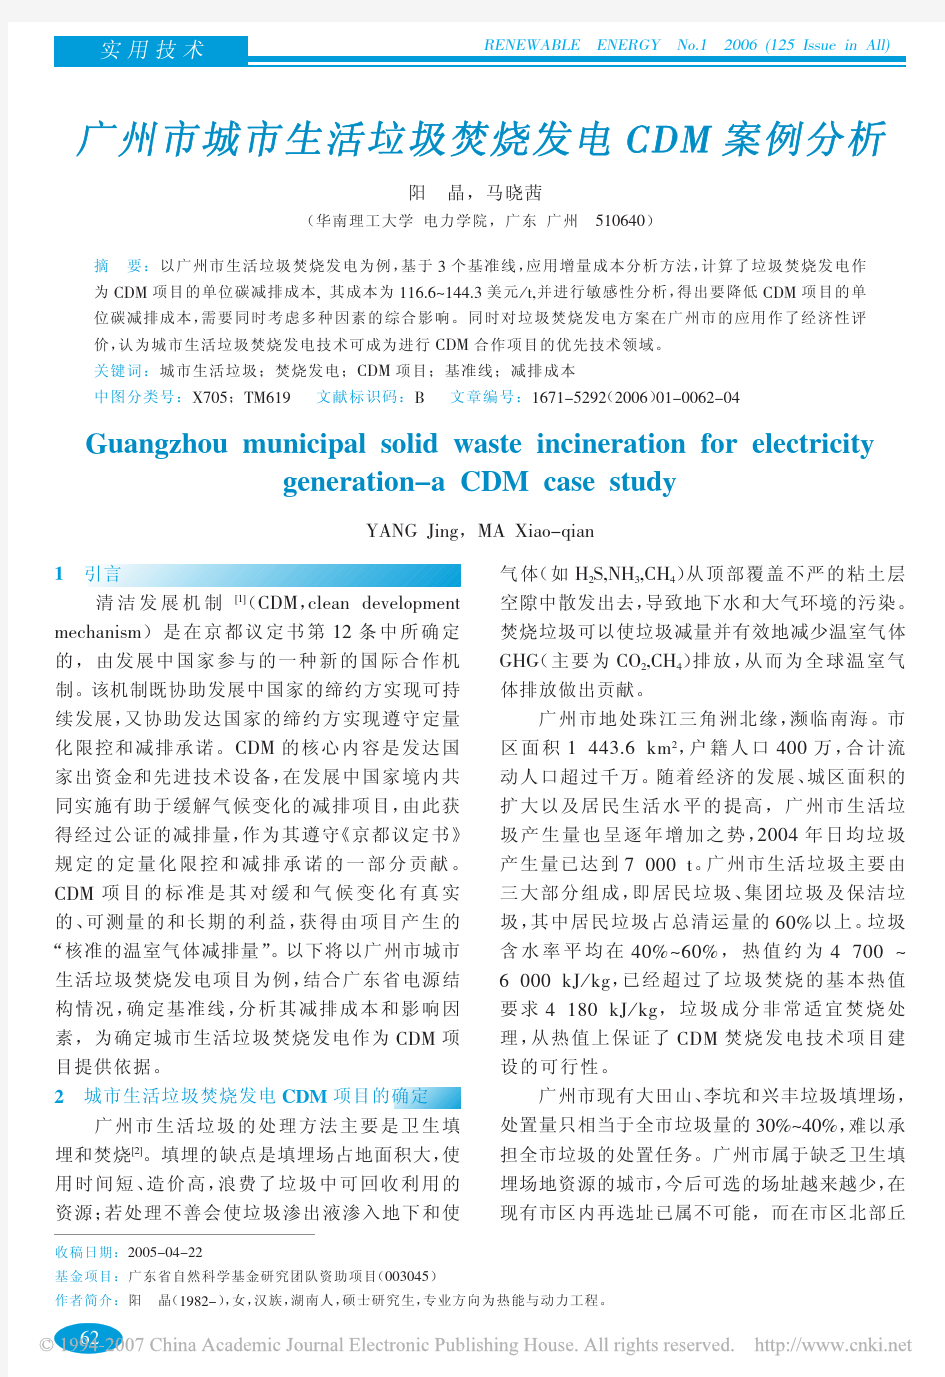 广州市城市生活垃圾焚烧发电CDM案例分析